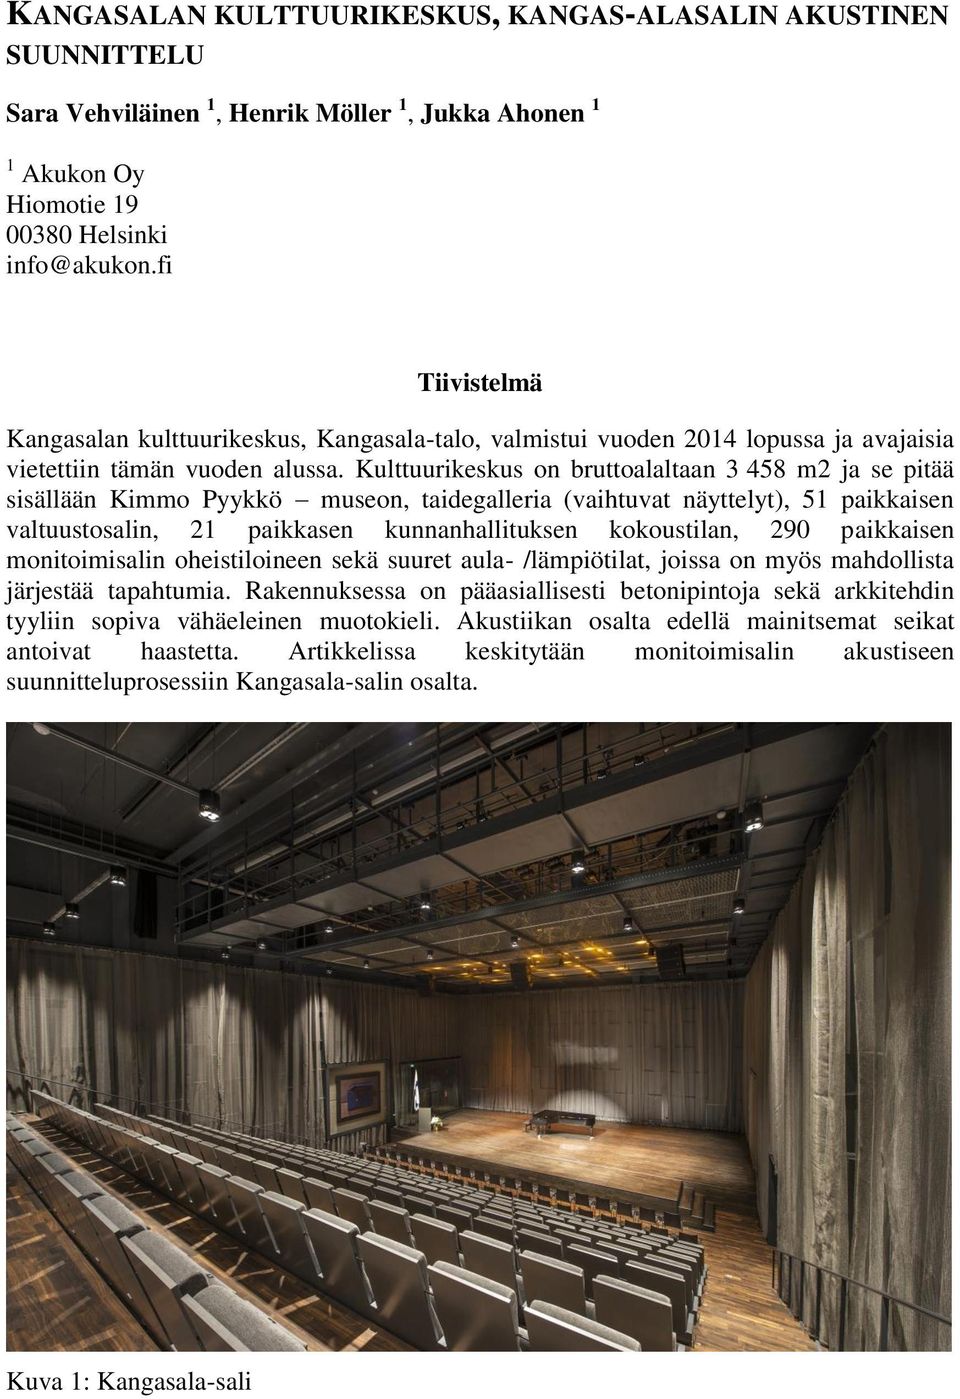 Kulttuurikeskus on bruttoalaltaan 3 458 m2 ja se pitää sisällään Kimmo Pyykkö museon, taidegalleria (vaihtuvat näyttelyt), 51 paikkaisen valtuustosalin, 21 paikkasen kunnanhallituksen kokoustilan,